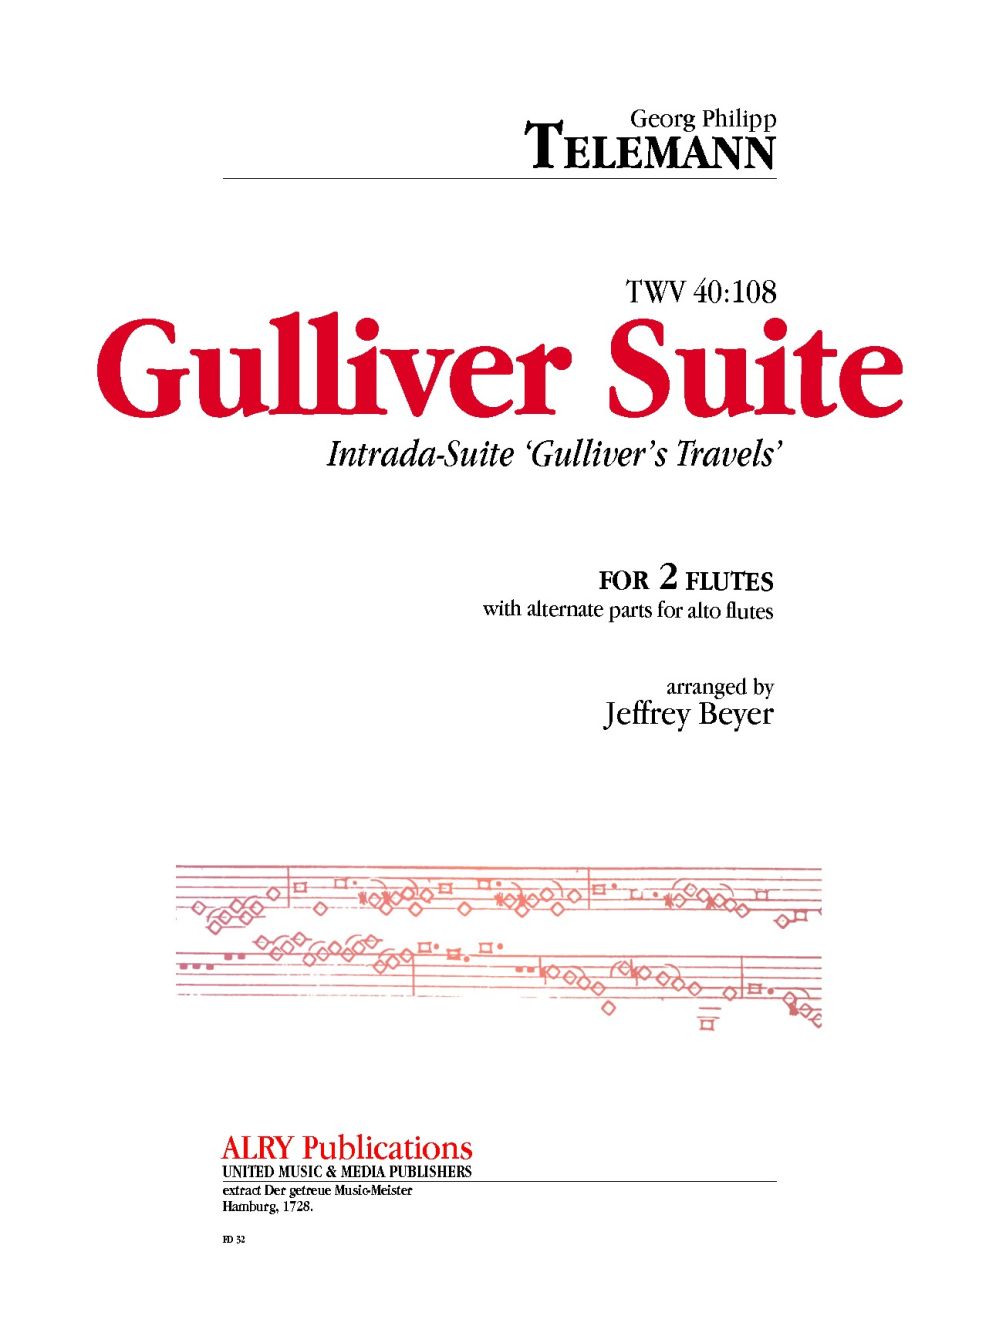 Gulliver Suite (TELEMANN GEORG PHILIPP)